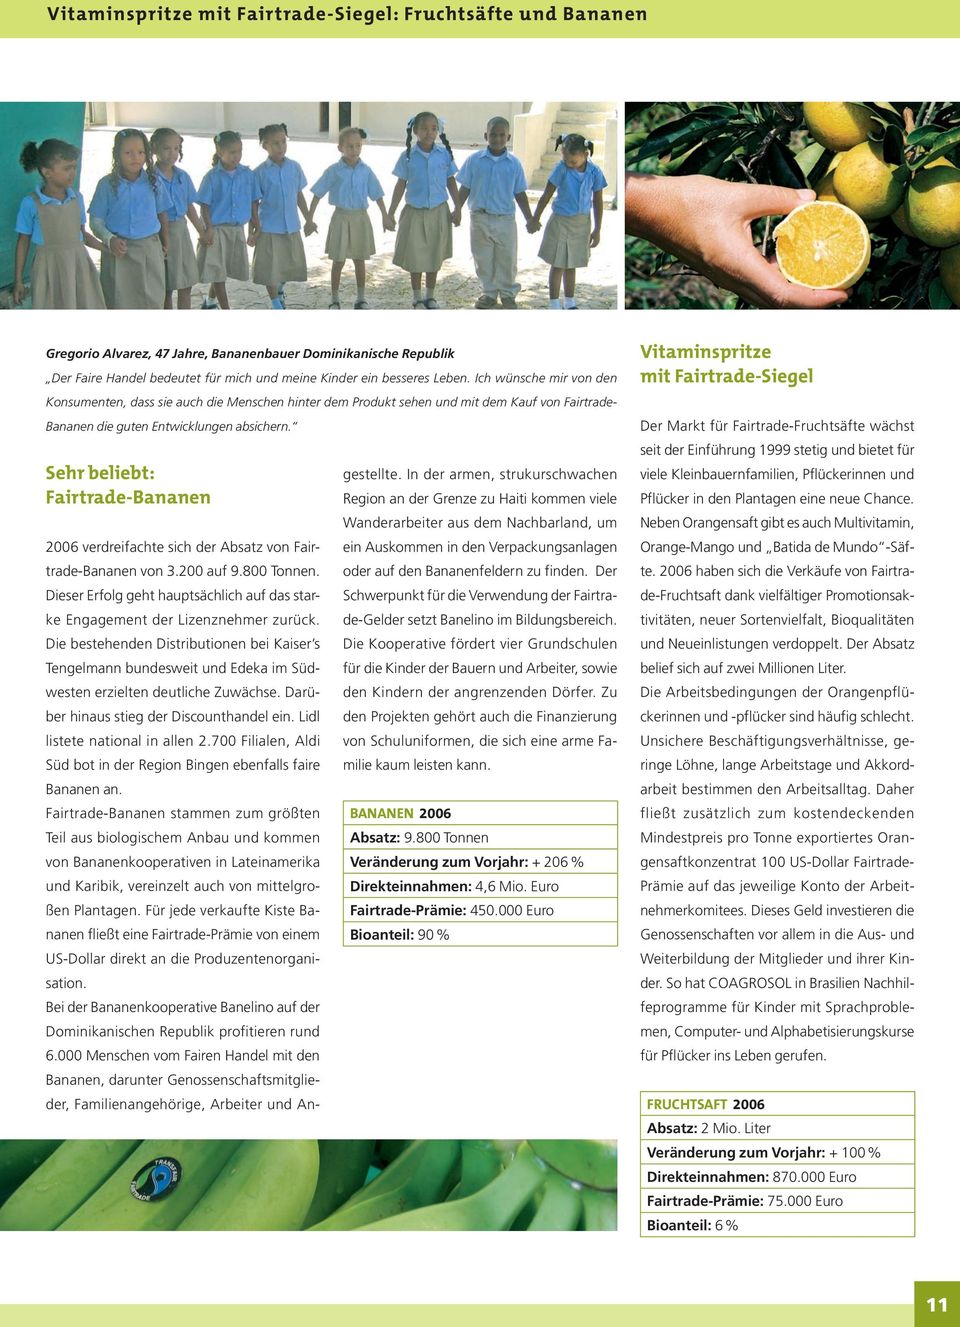 Sehr beliebt: Fairtrade-Bananen 2006 verdreifachte sich der Absatz von Fairtrade-Bananen von 3.200 auf 9.800 Tonnen. Dieser Erfolg geht hauptsächlich auf das starke Engagement der Lizenznehmer zurück.